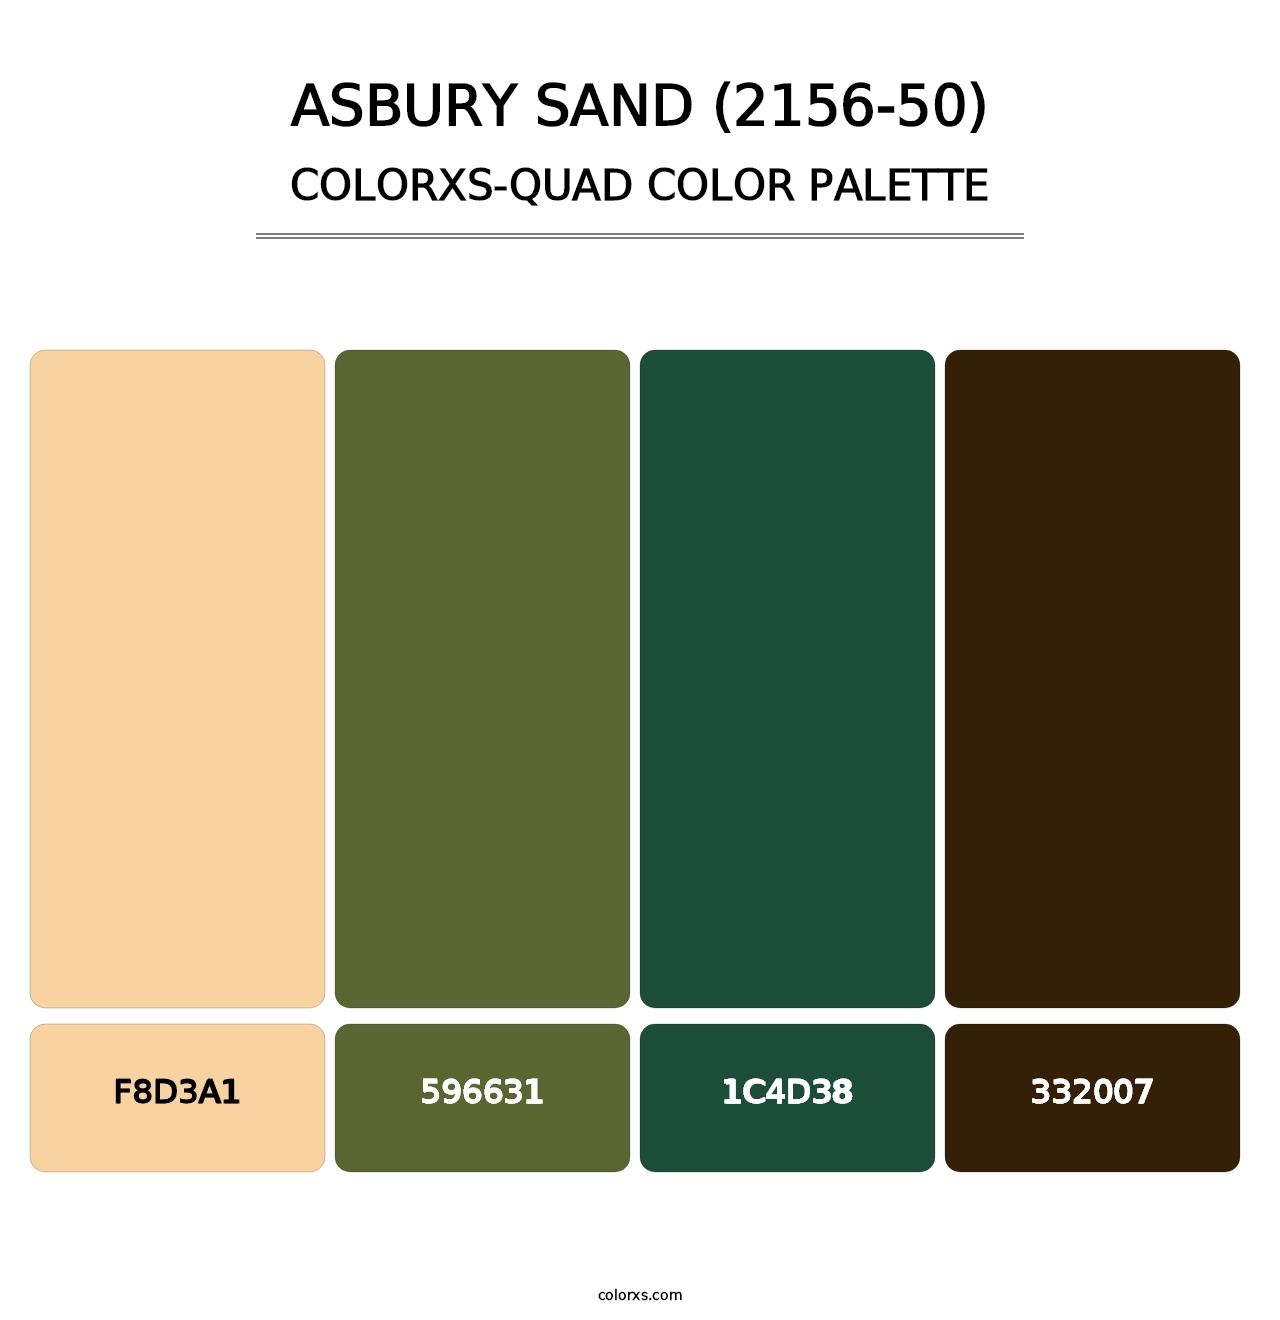 Asbury Sand (2156-50) - Colorxs Quad Palette